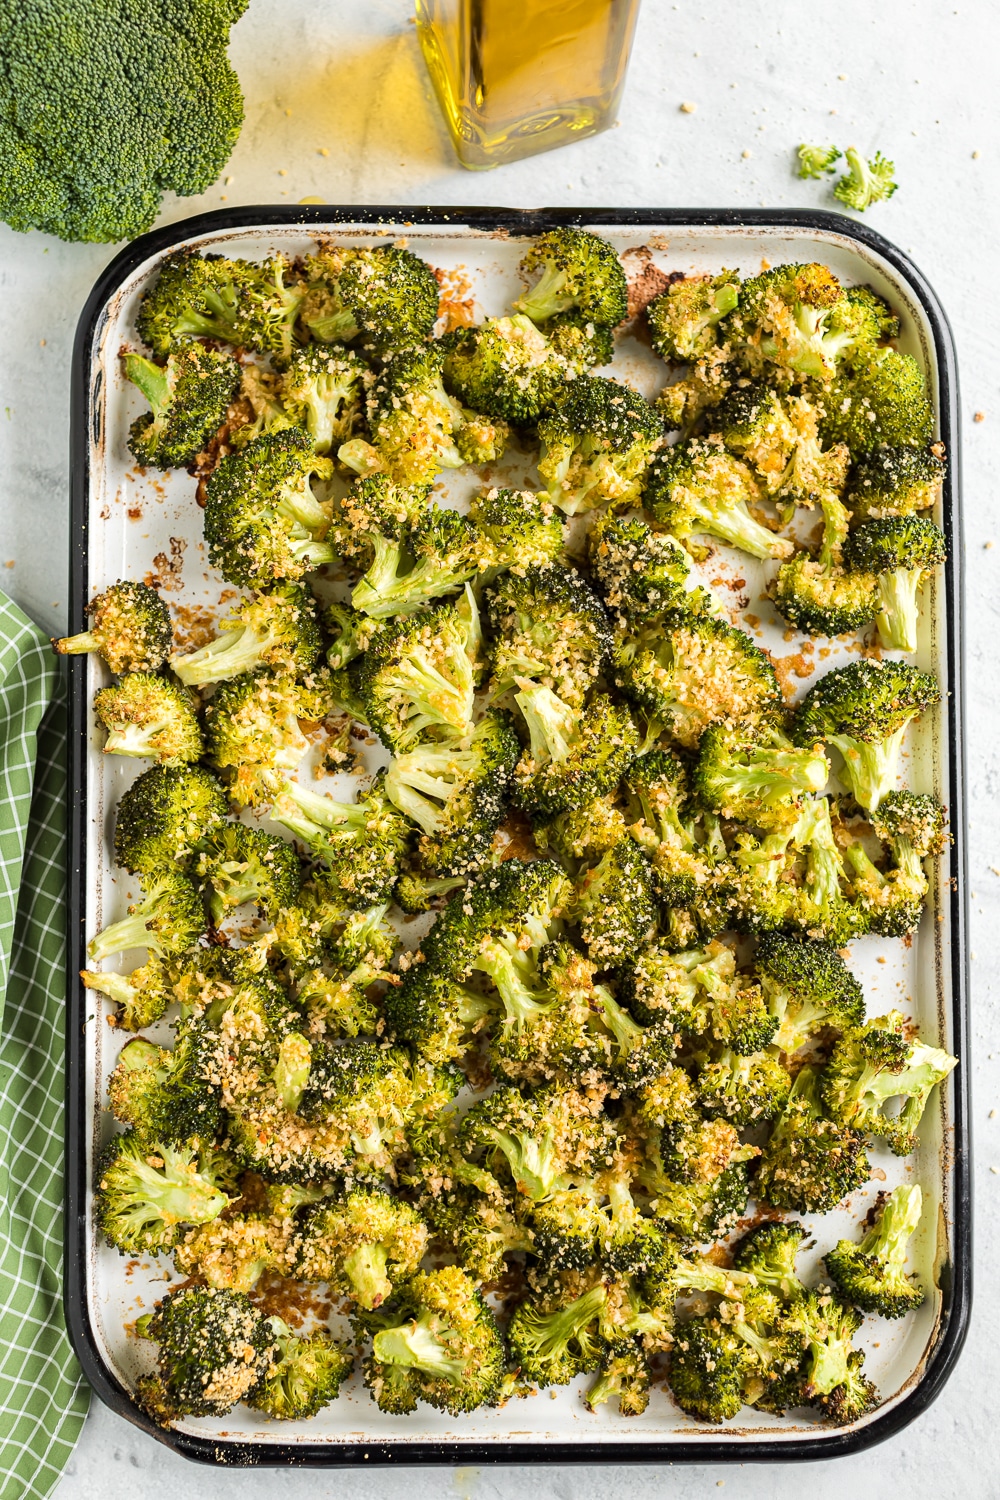 Broccoli side dish recipe